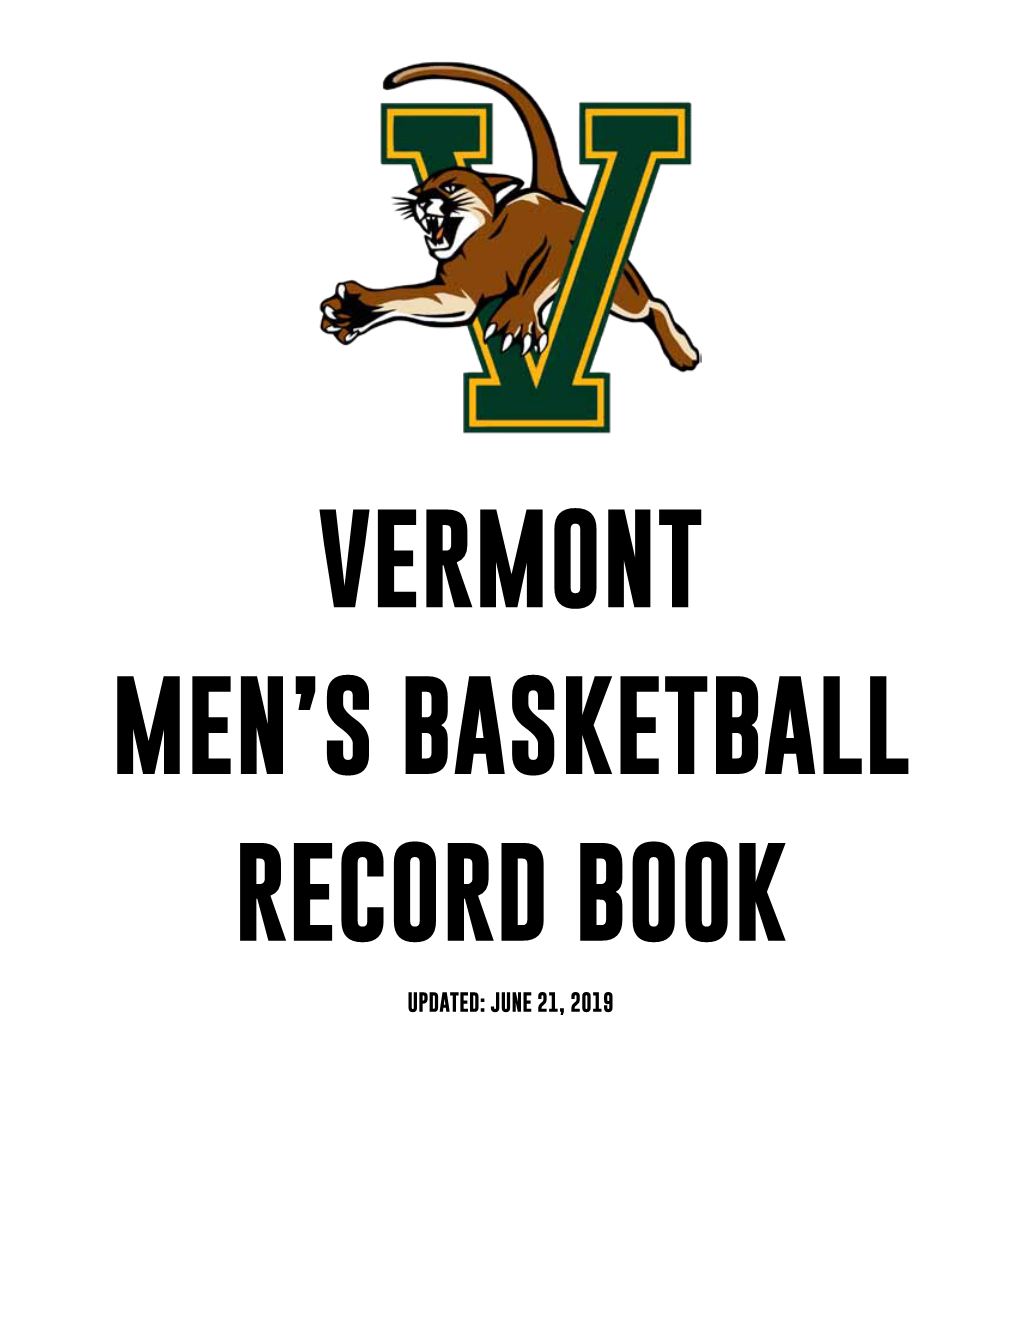 Vermont Men's Basketball Record Book